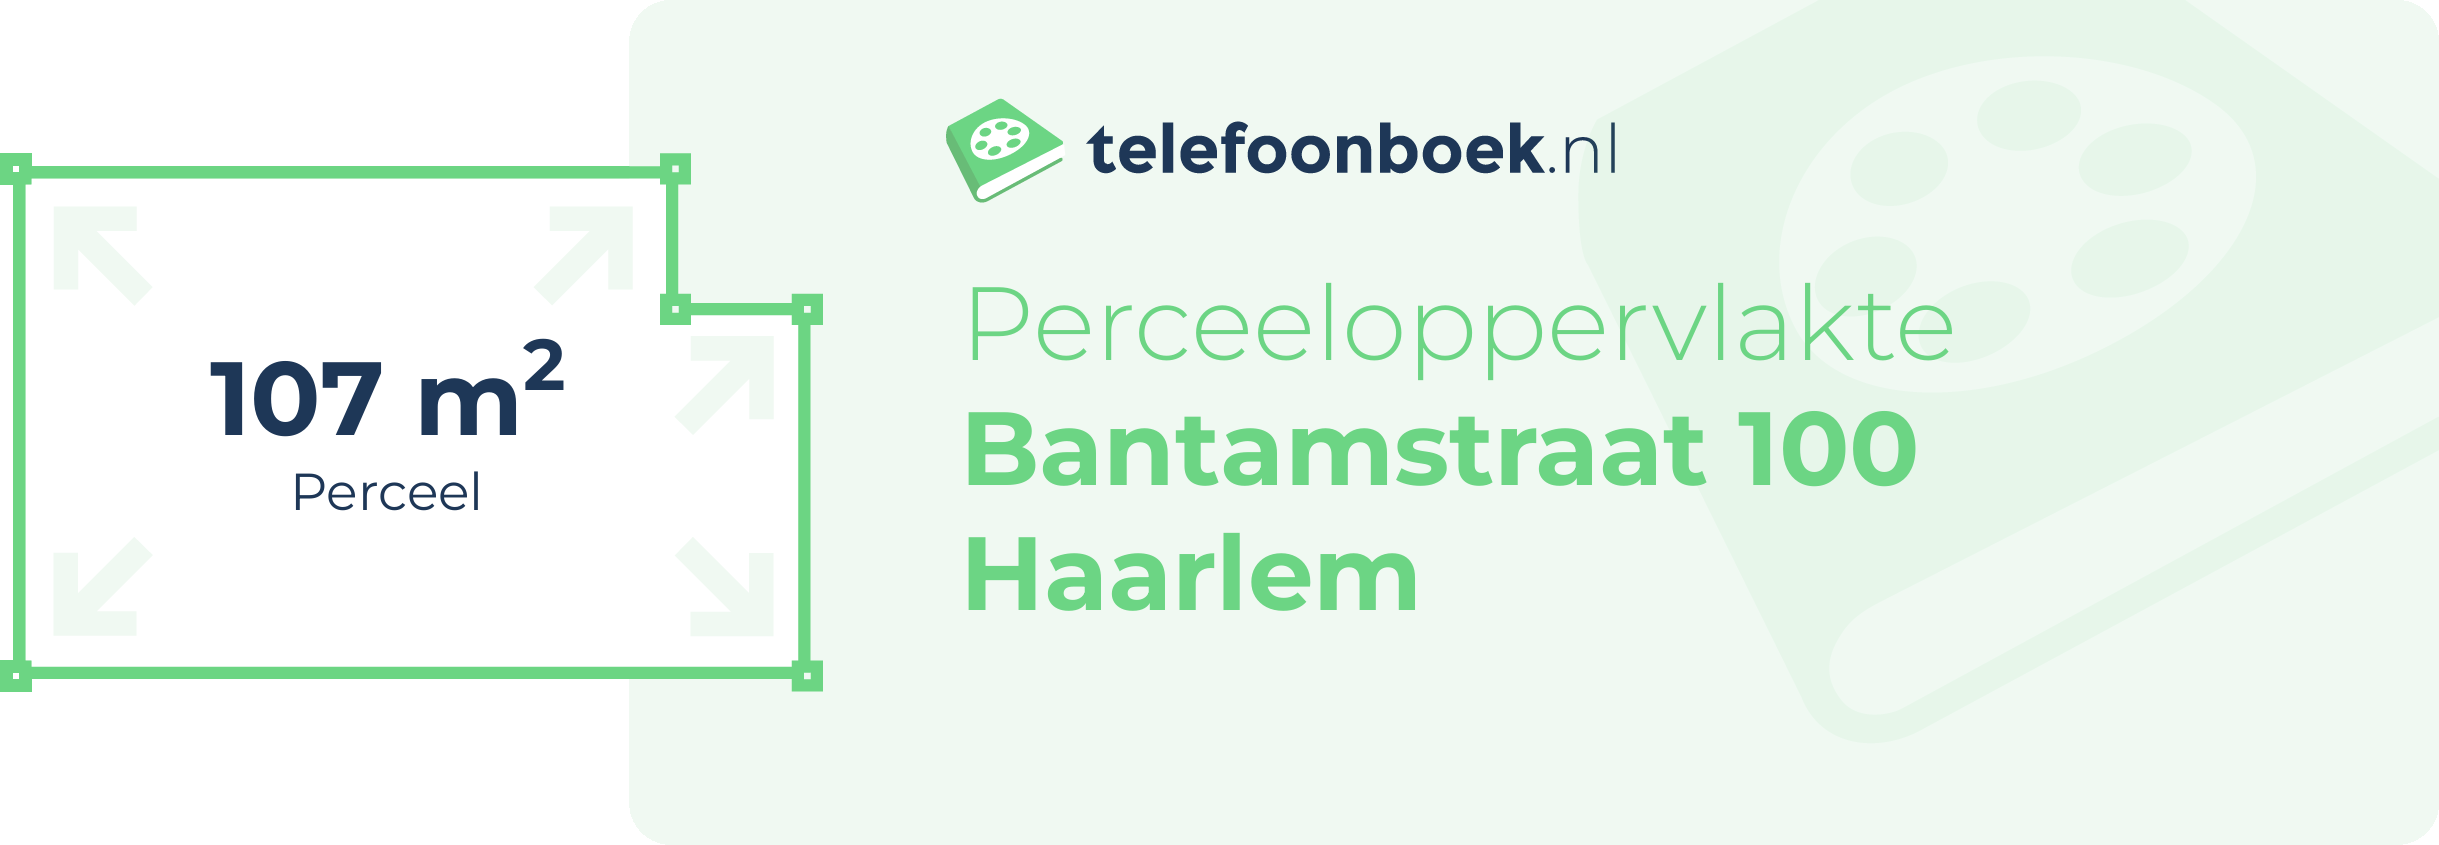 Perceeloppervlakte Bantamstraat 100 Haarlem